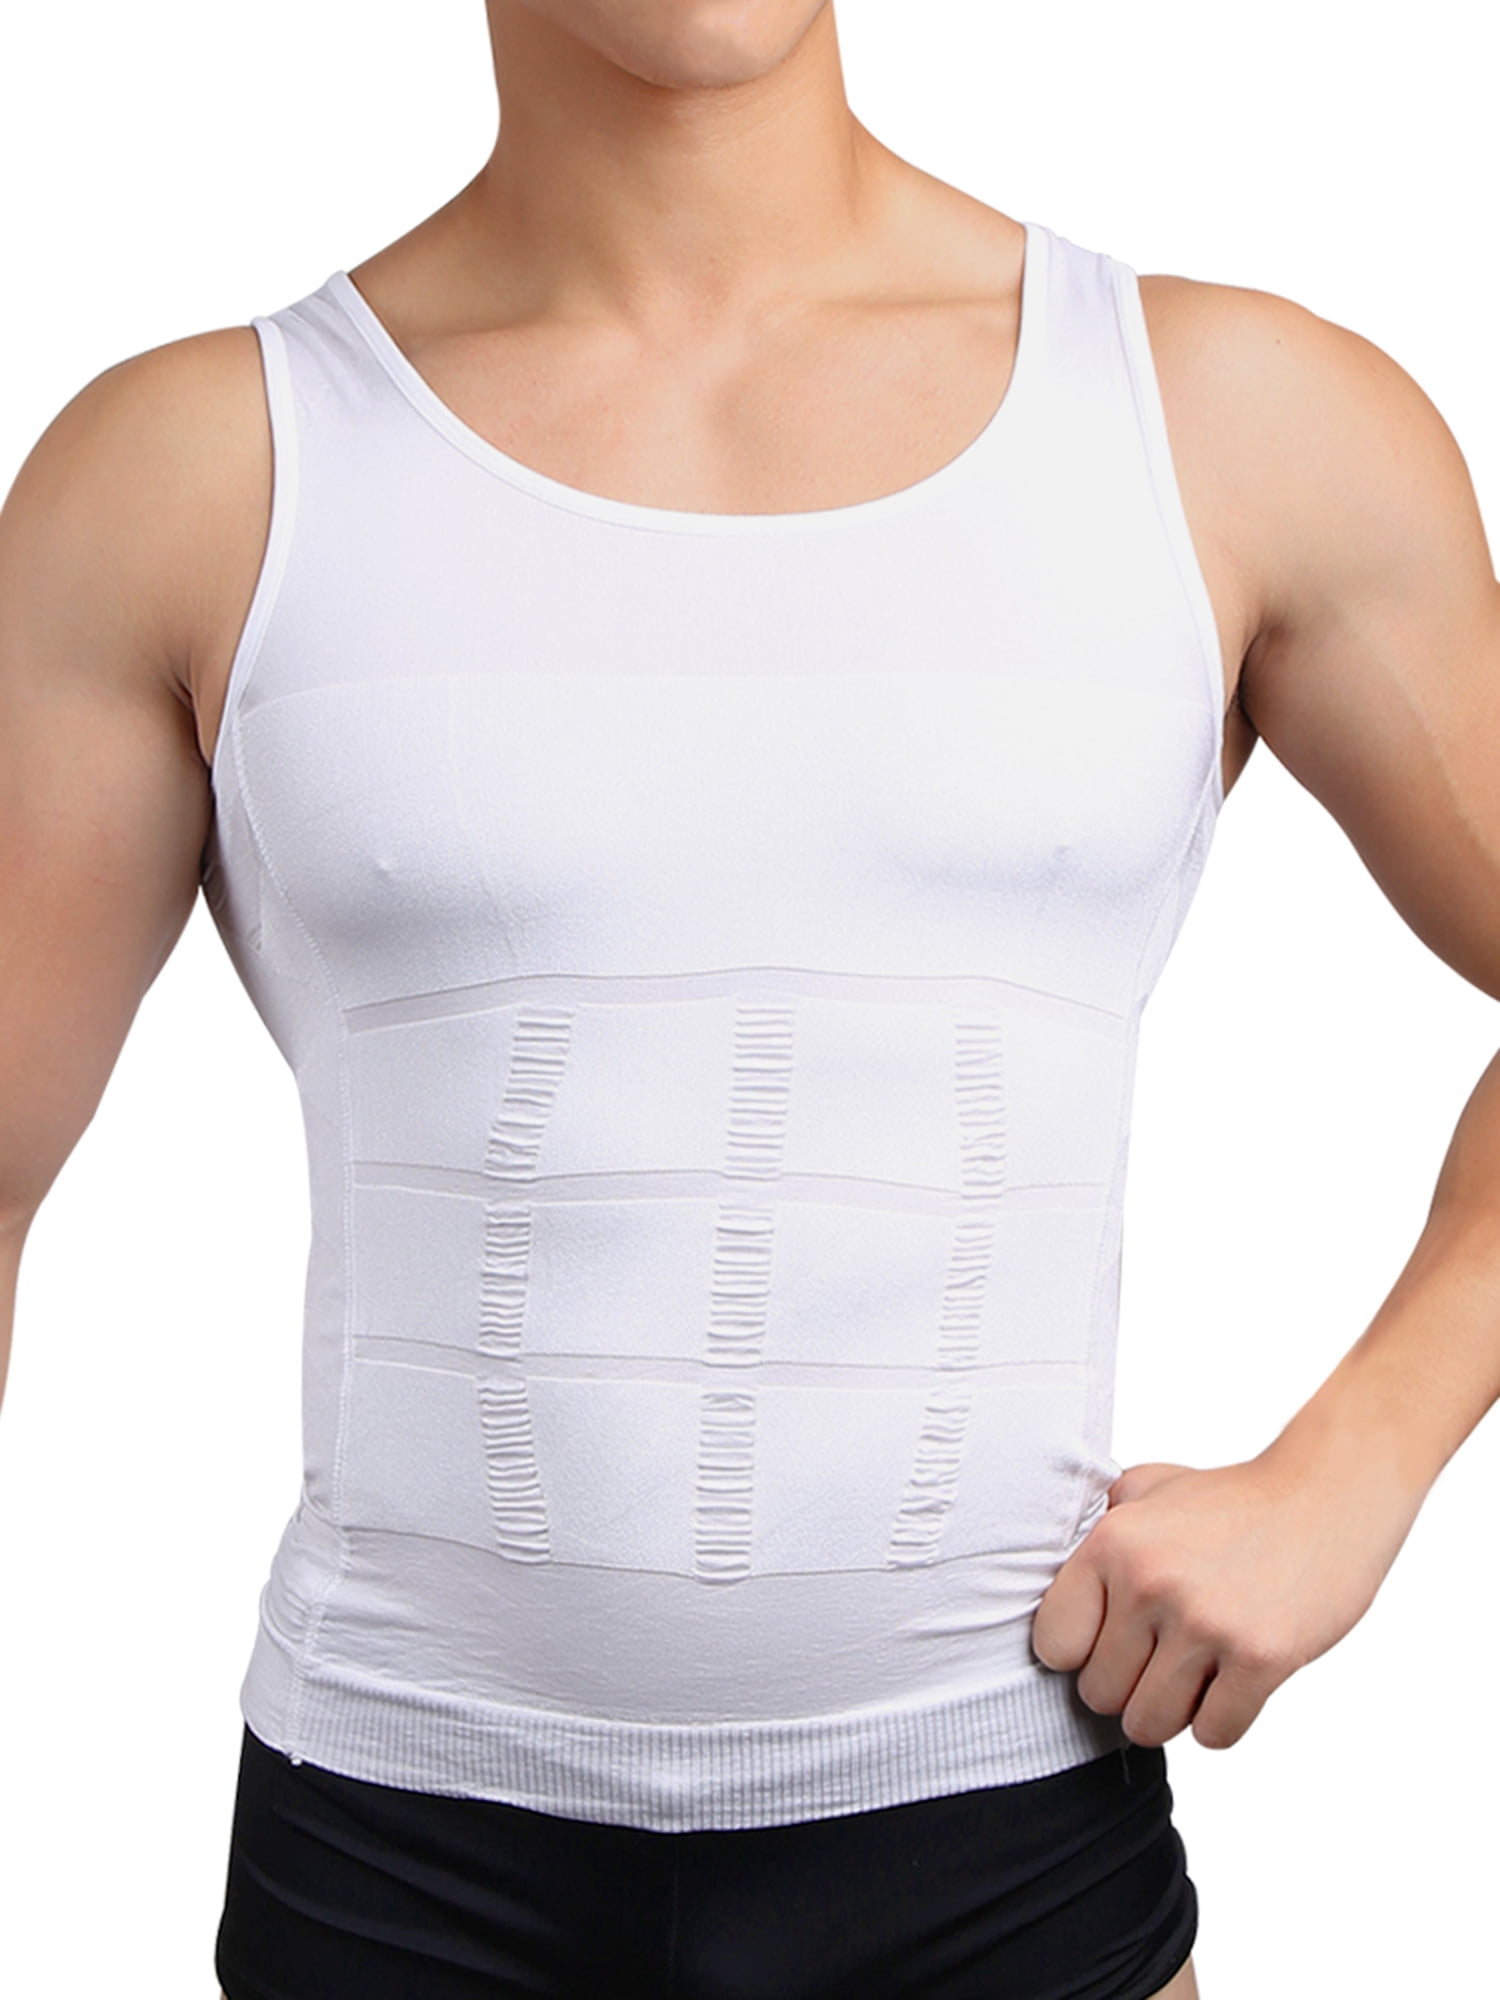 Men Slimming Body Shapewear Vest Shirt Undershirt Abdomen Tummy Belly Slim Tool 